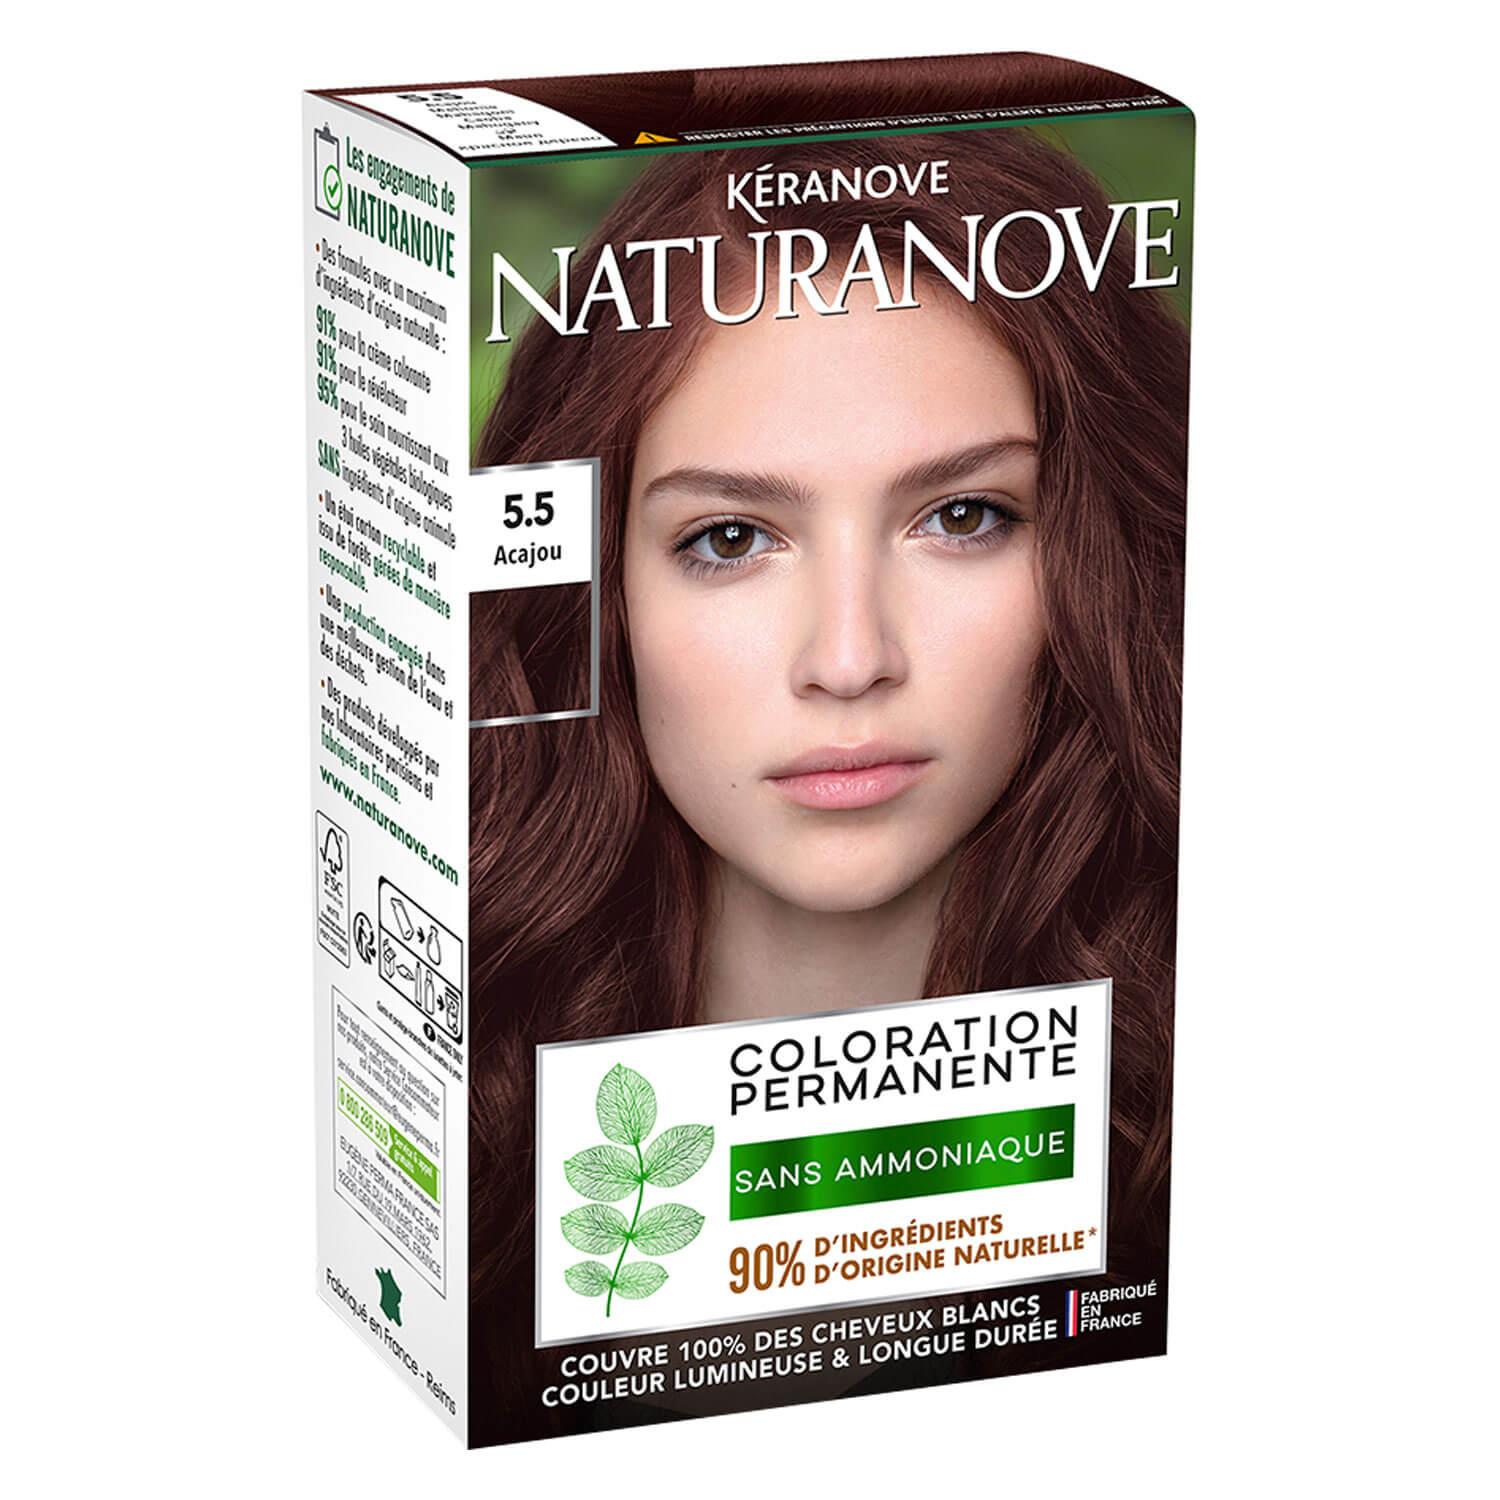 Naturanove - Permanent Hair Color Mahogany 5.5